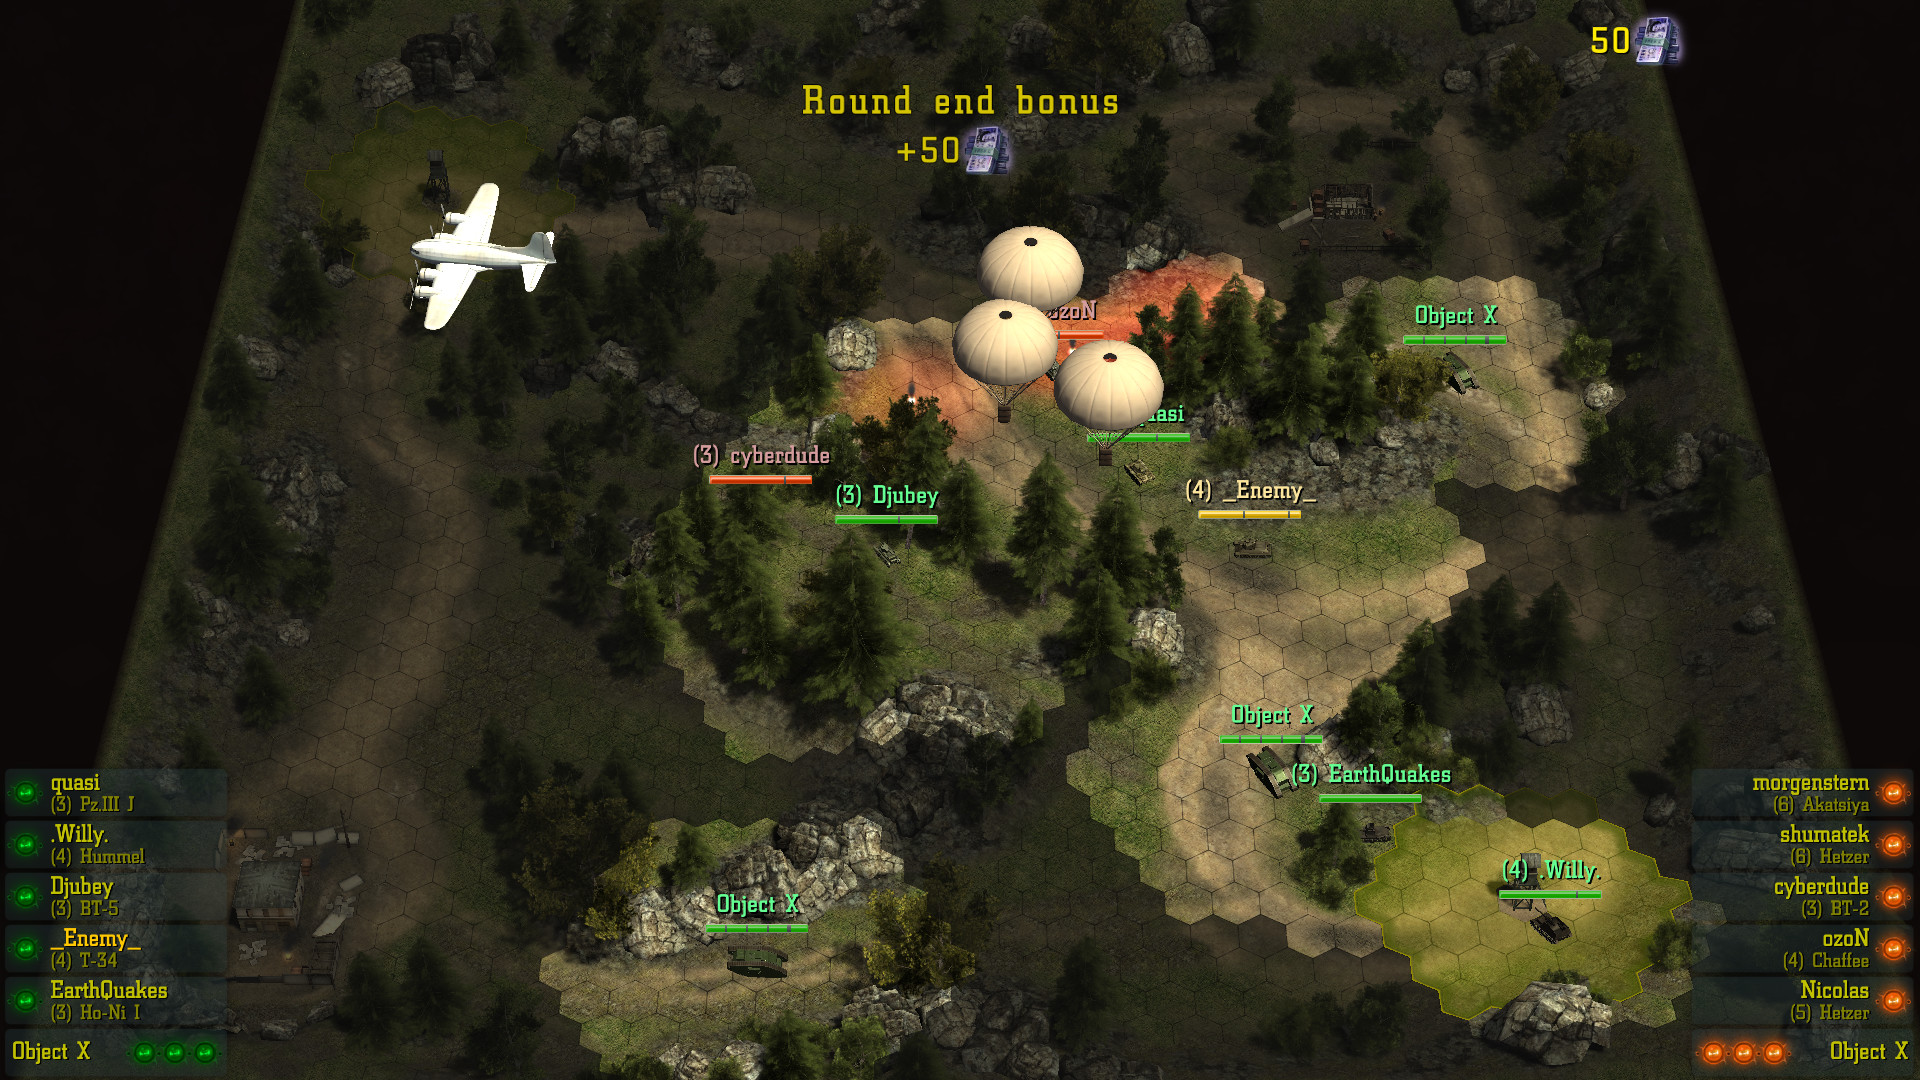 Find & Destroy: Tank Strategy free downloads